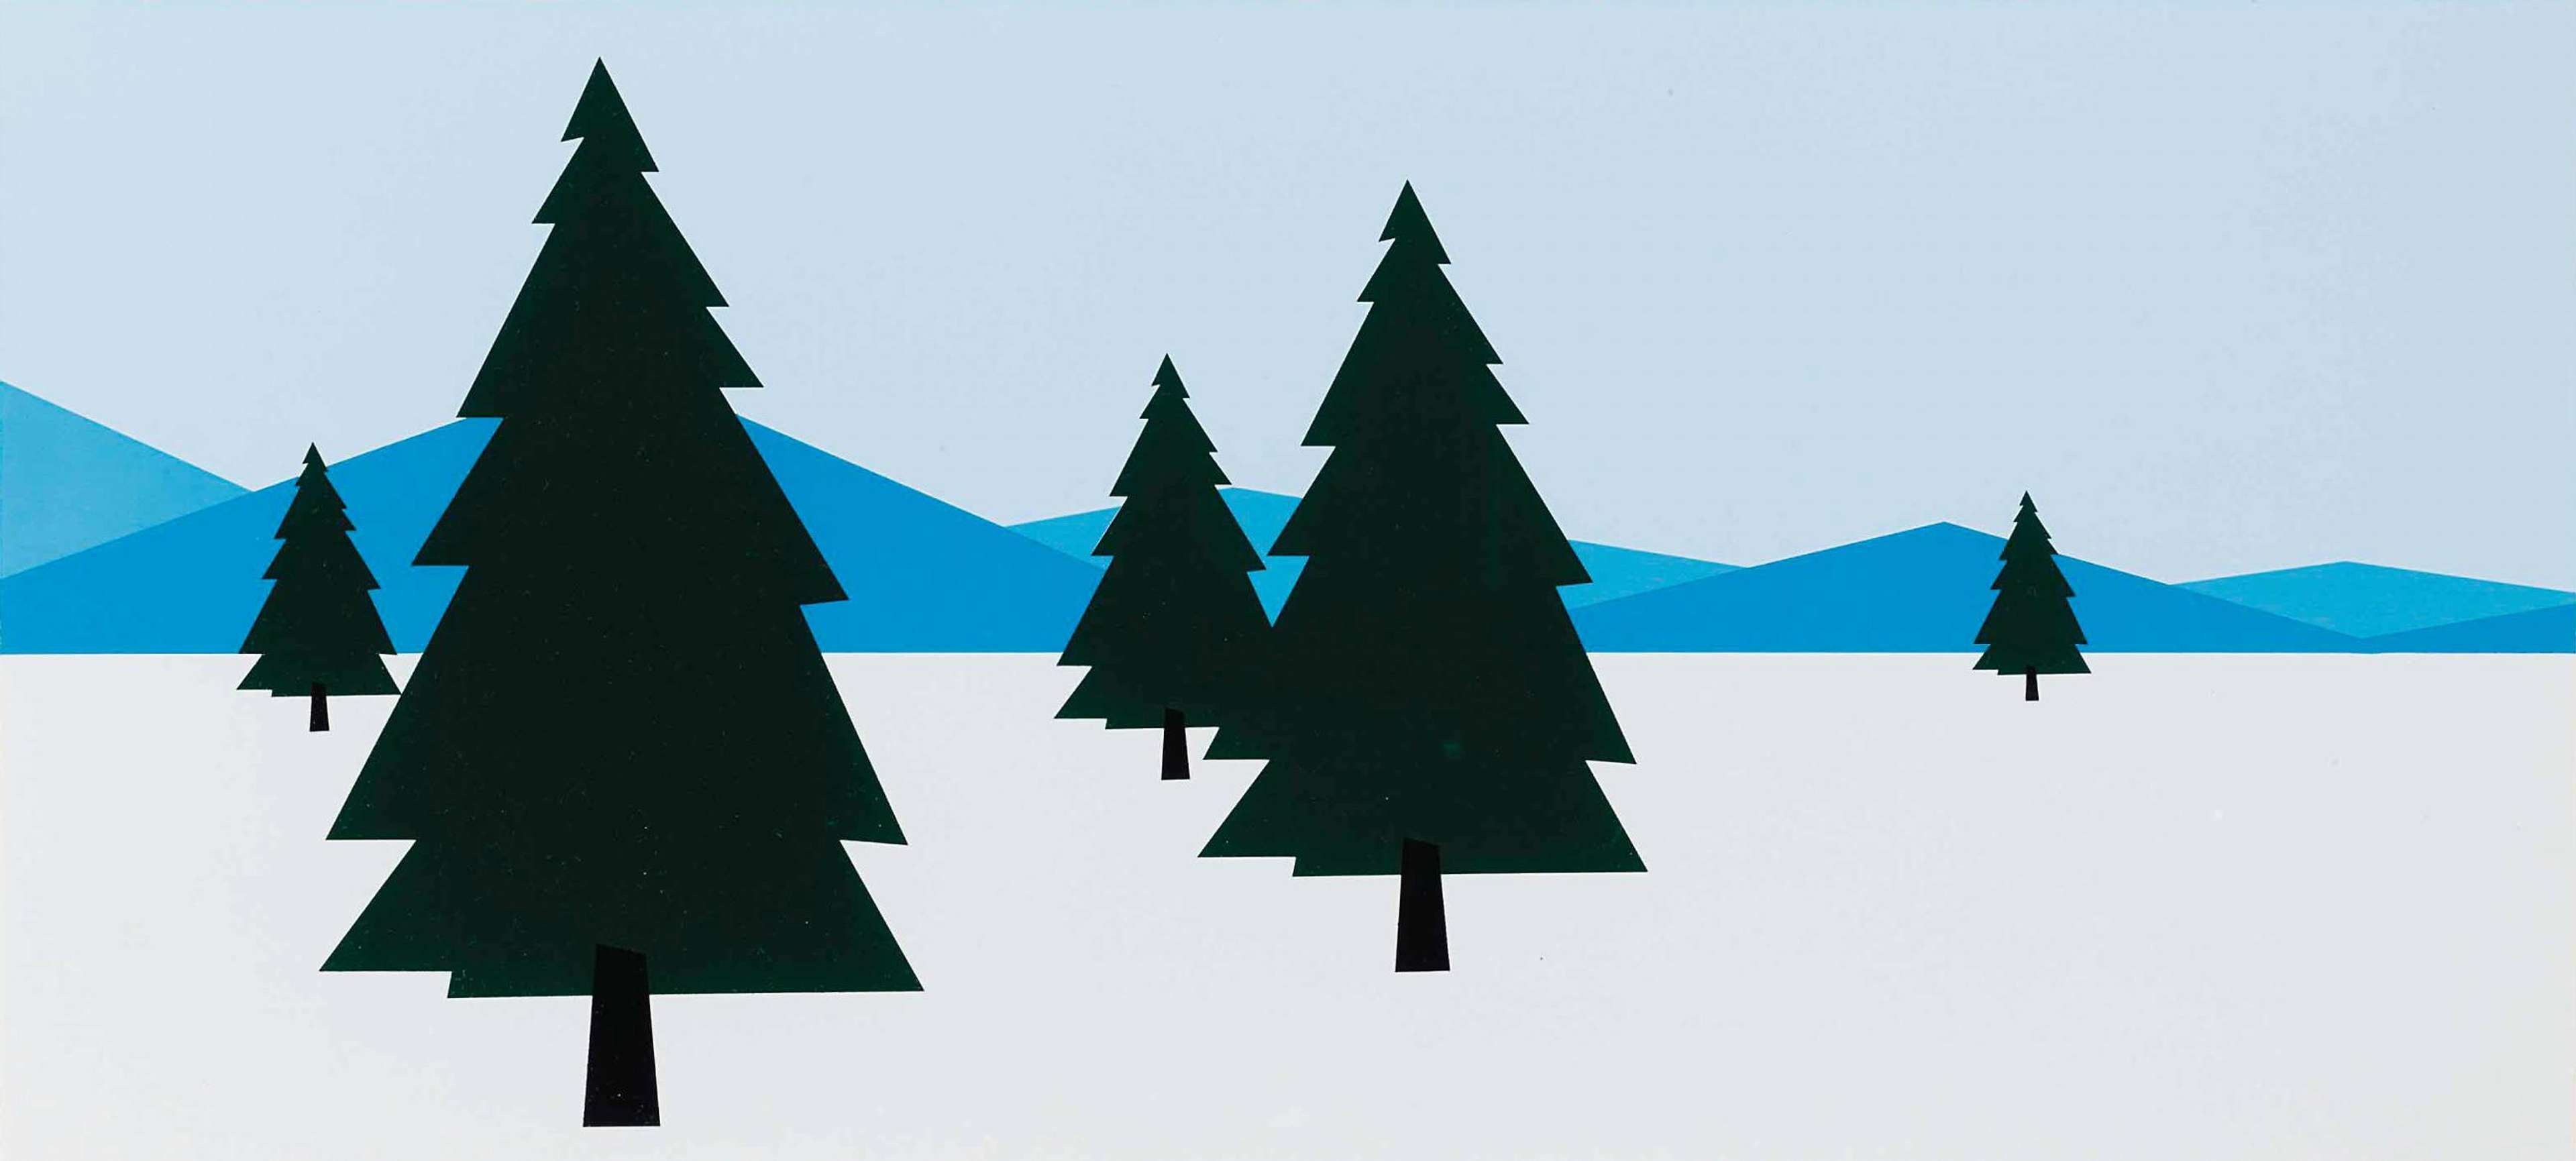 Winter Landscape - Signed Print